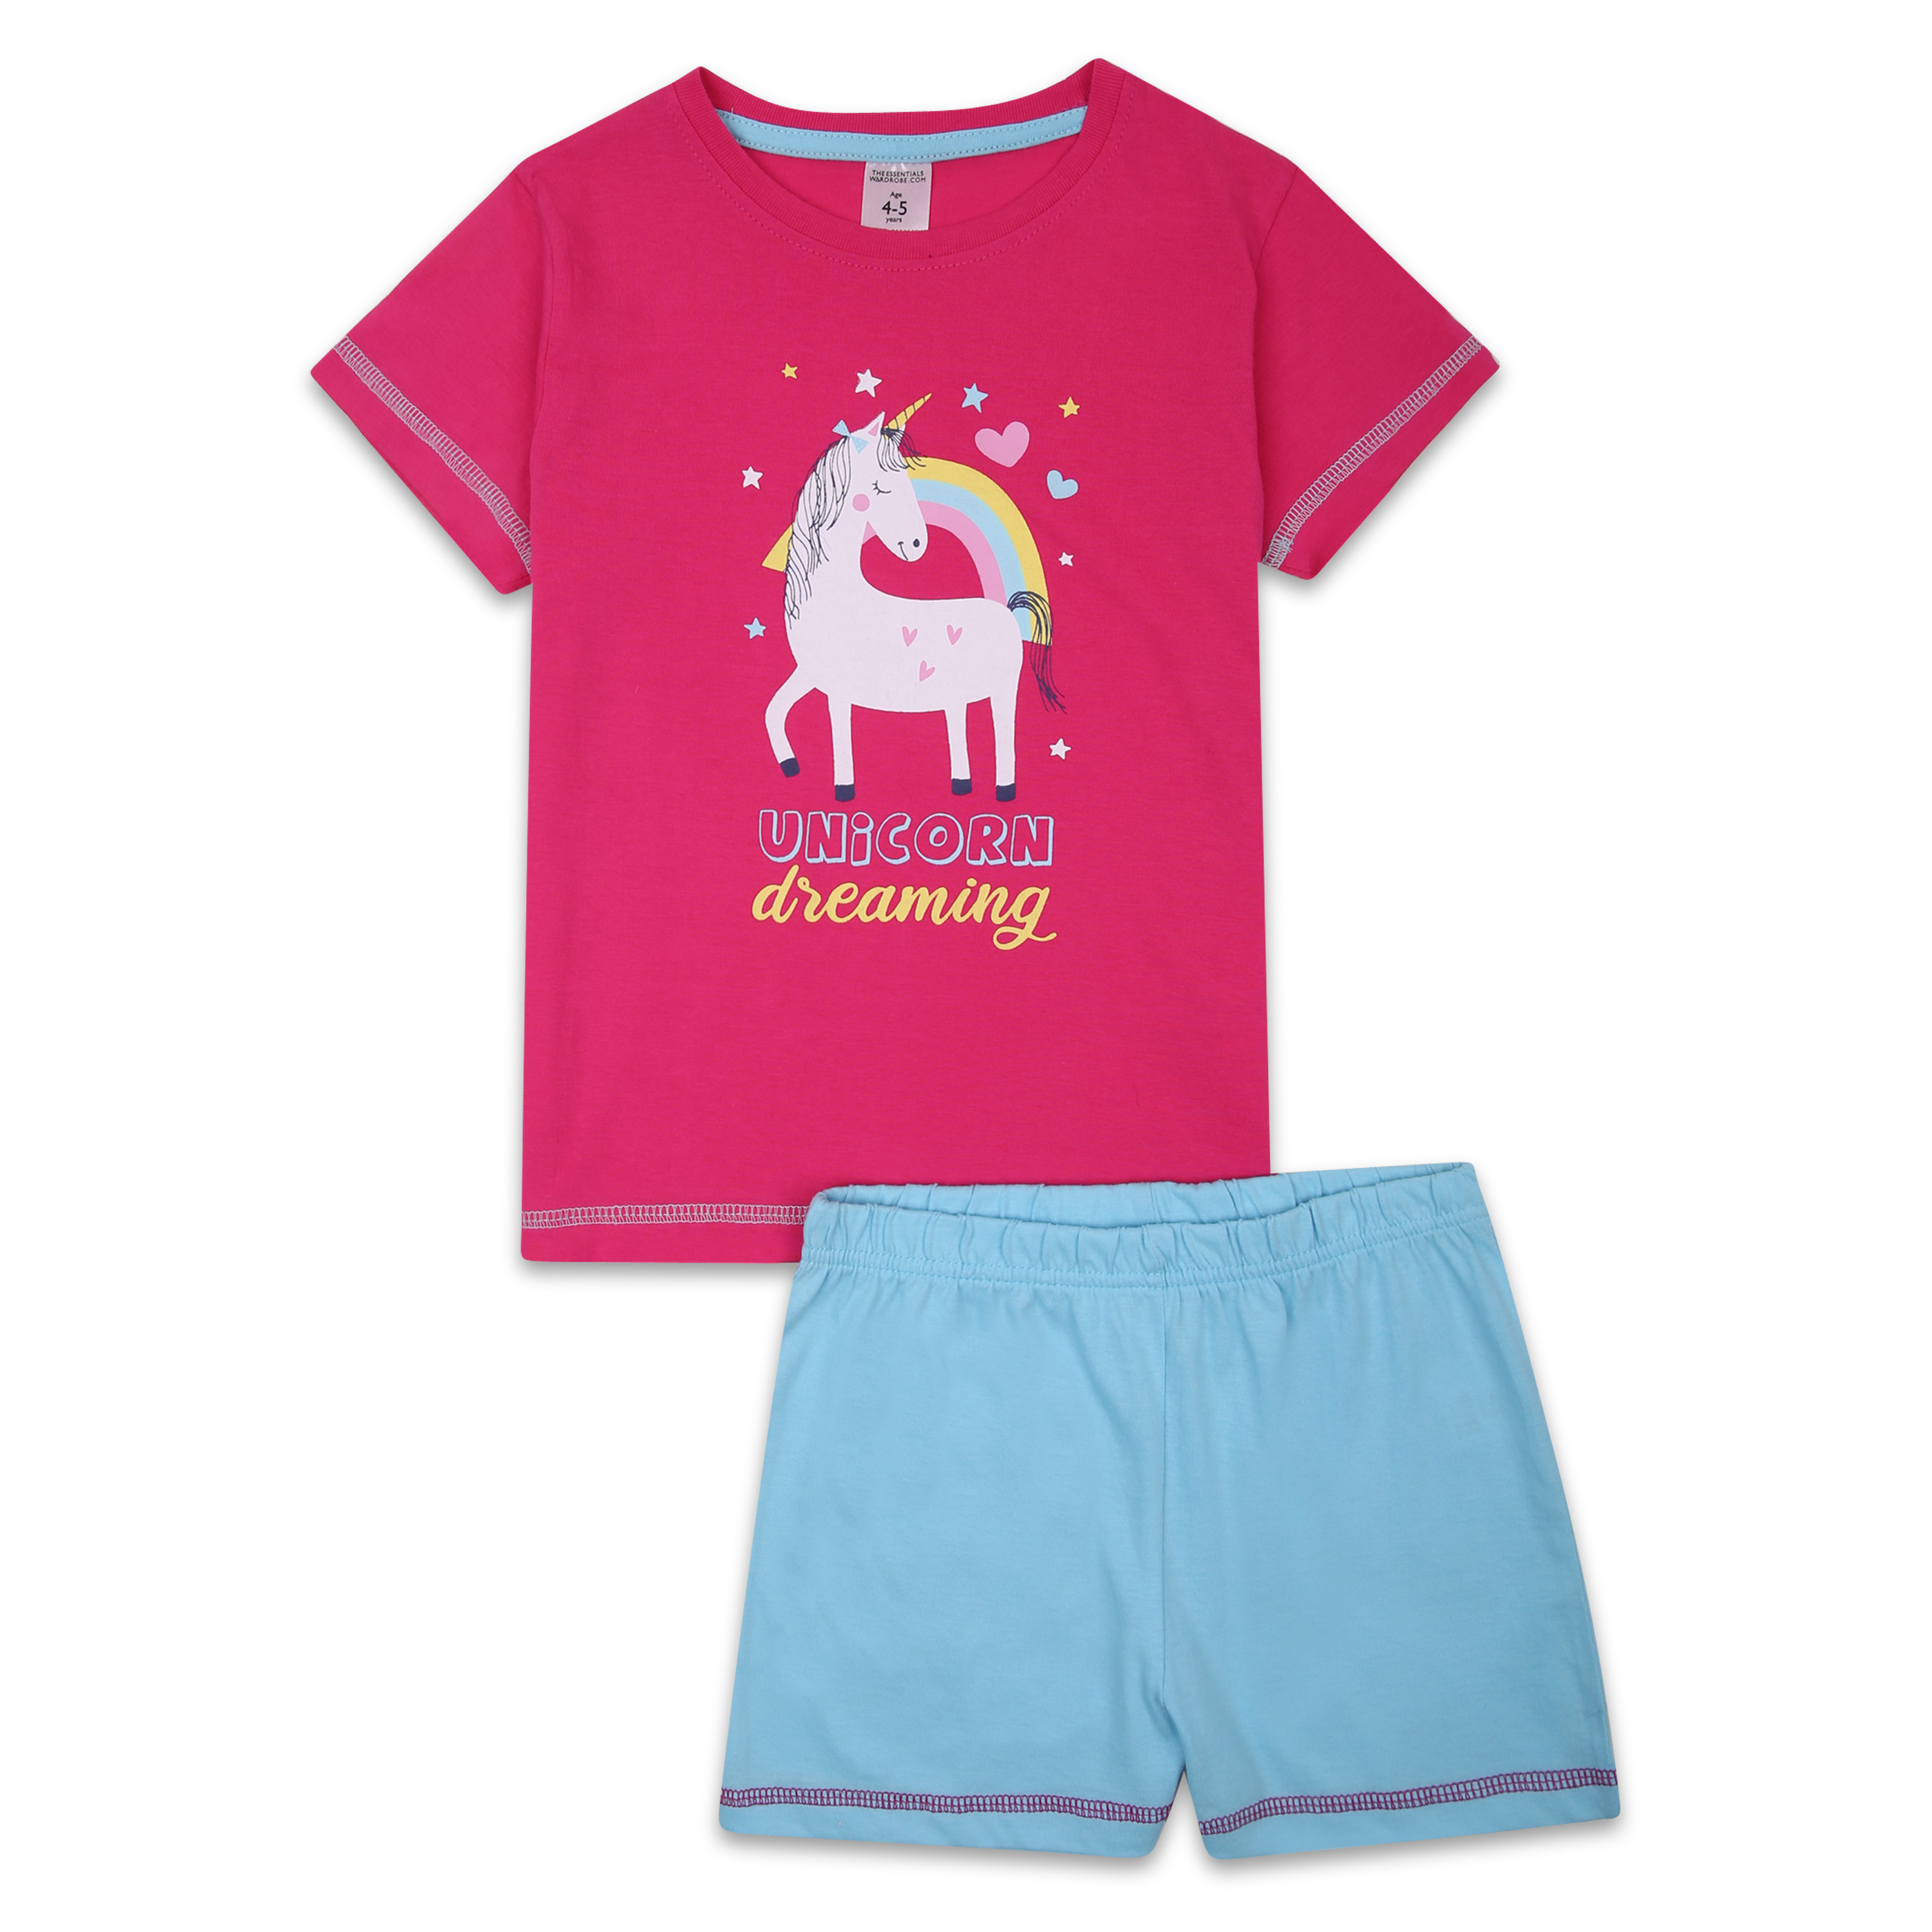 Girls Short Pyjamas Shorty Nightwear Sleepwear Pjs Unicorn Size 12 Months to 11 Years